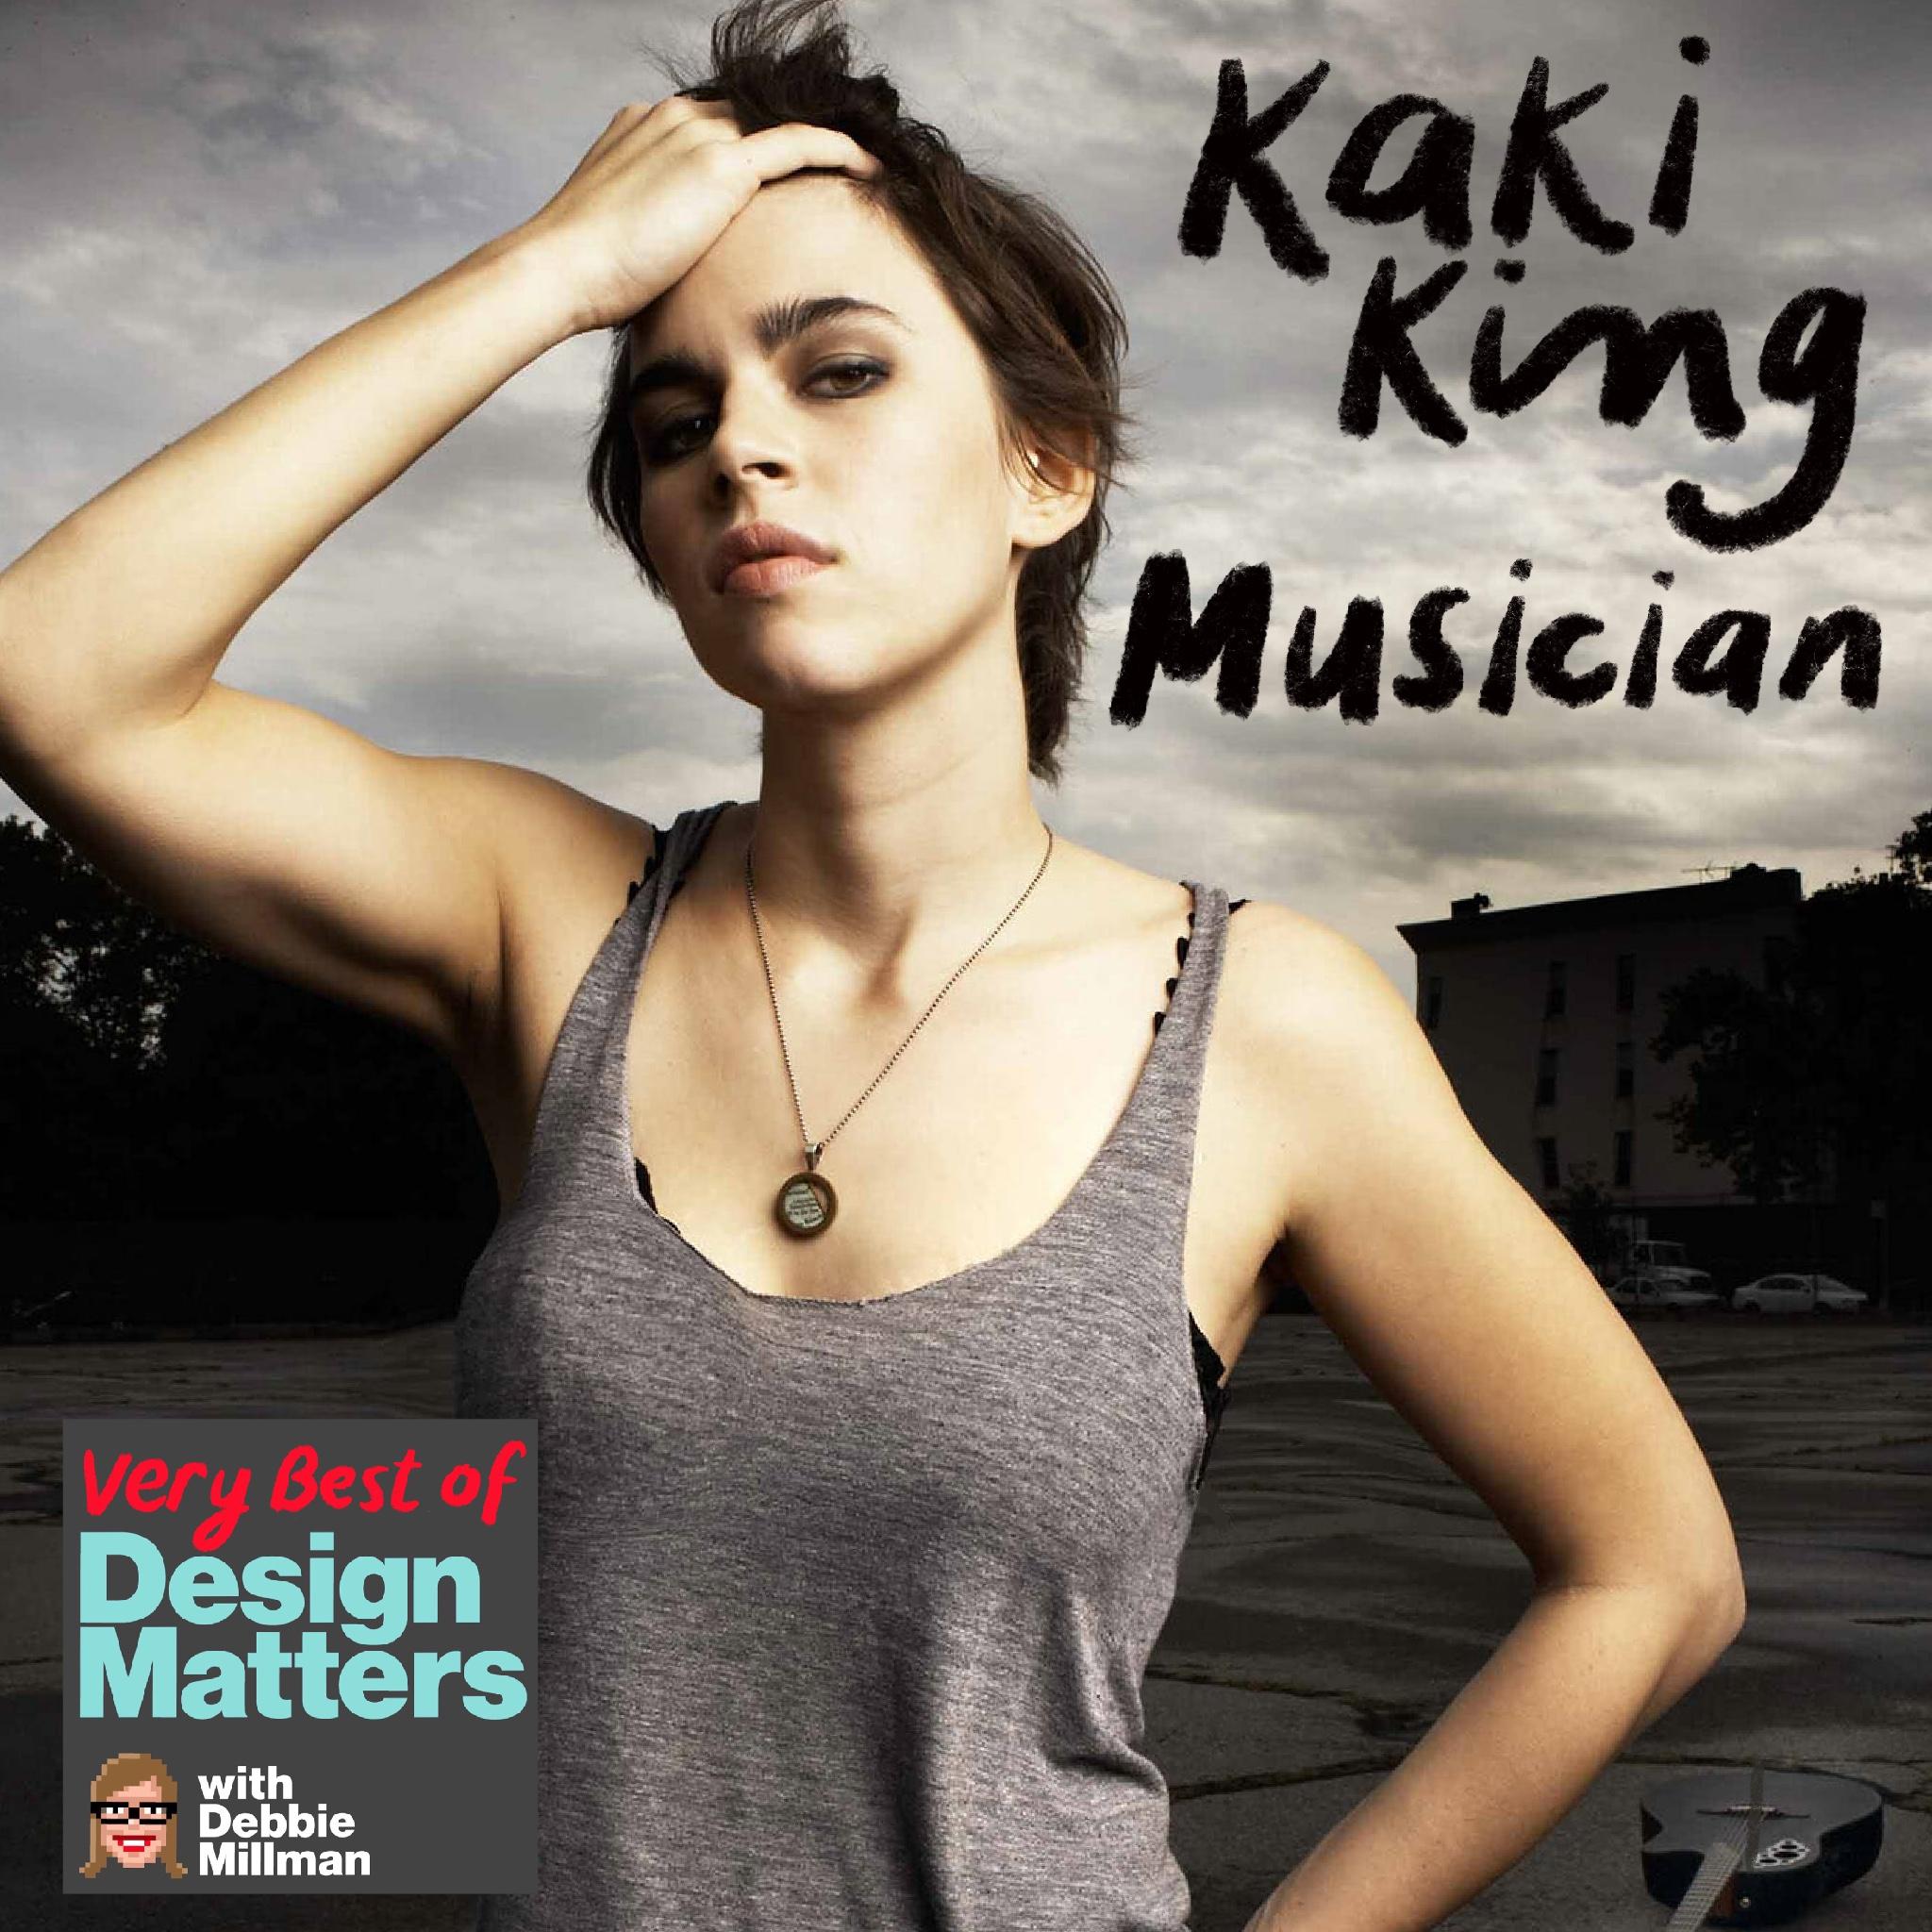 Thumbnail for "Best of Design Matters: Kaki King".